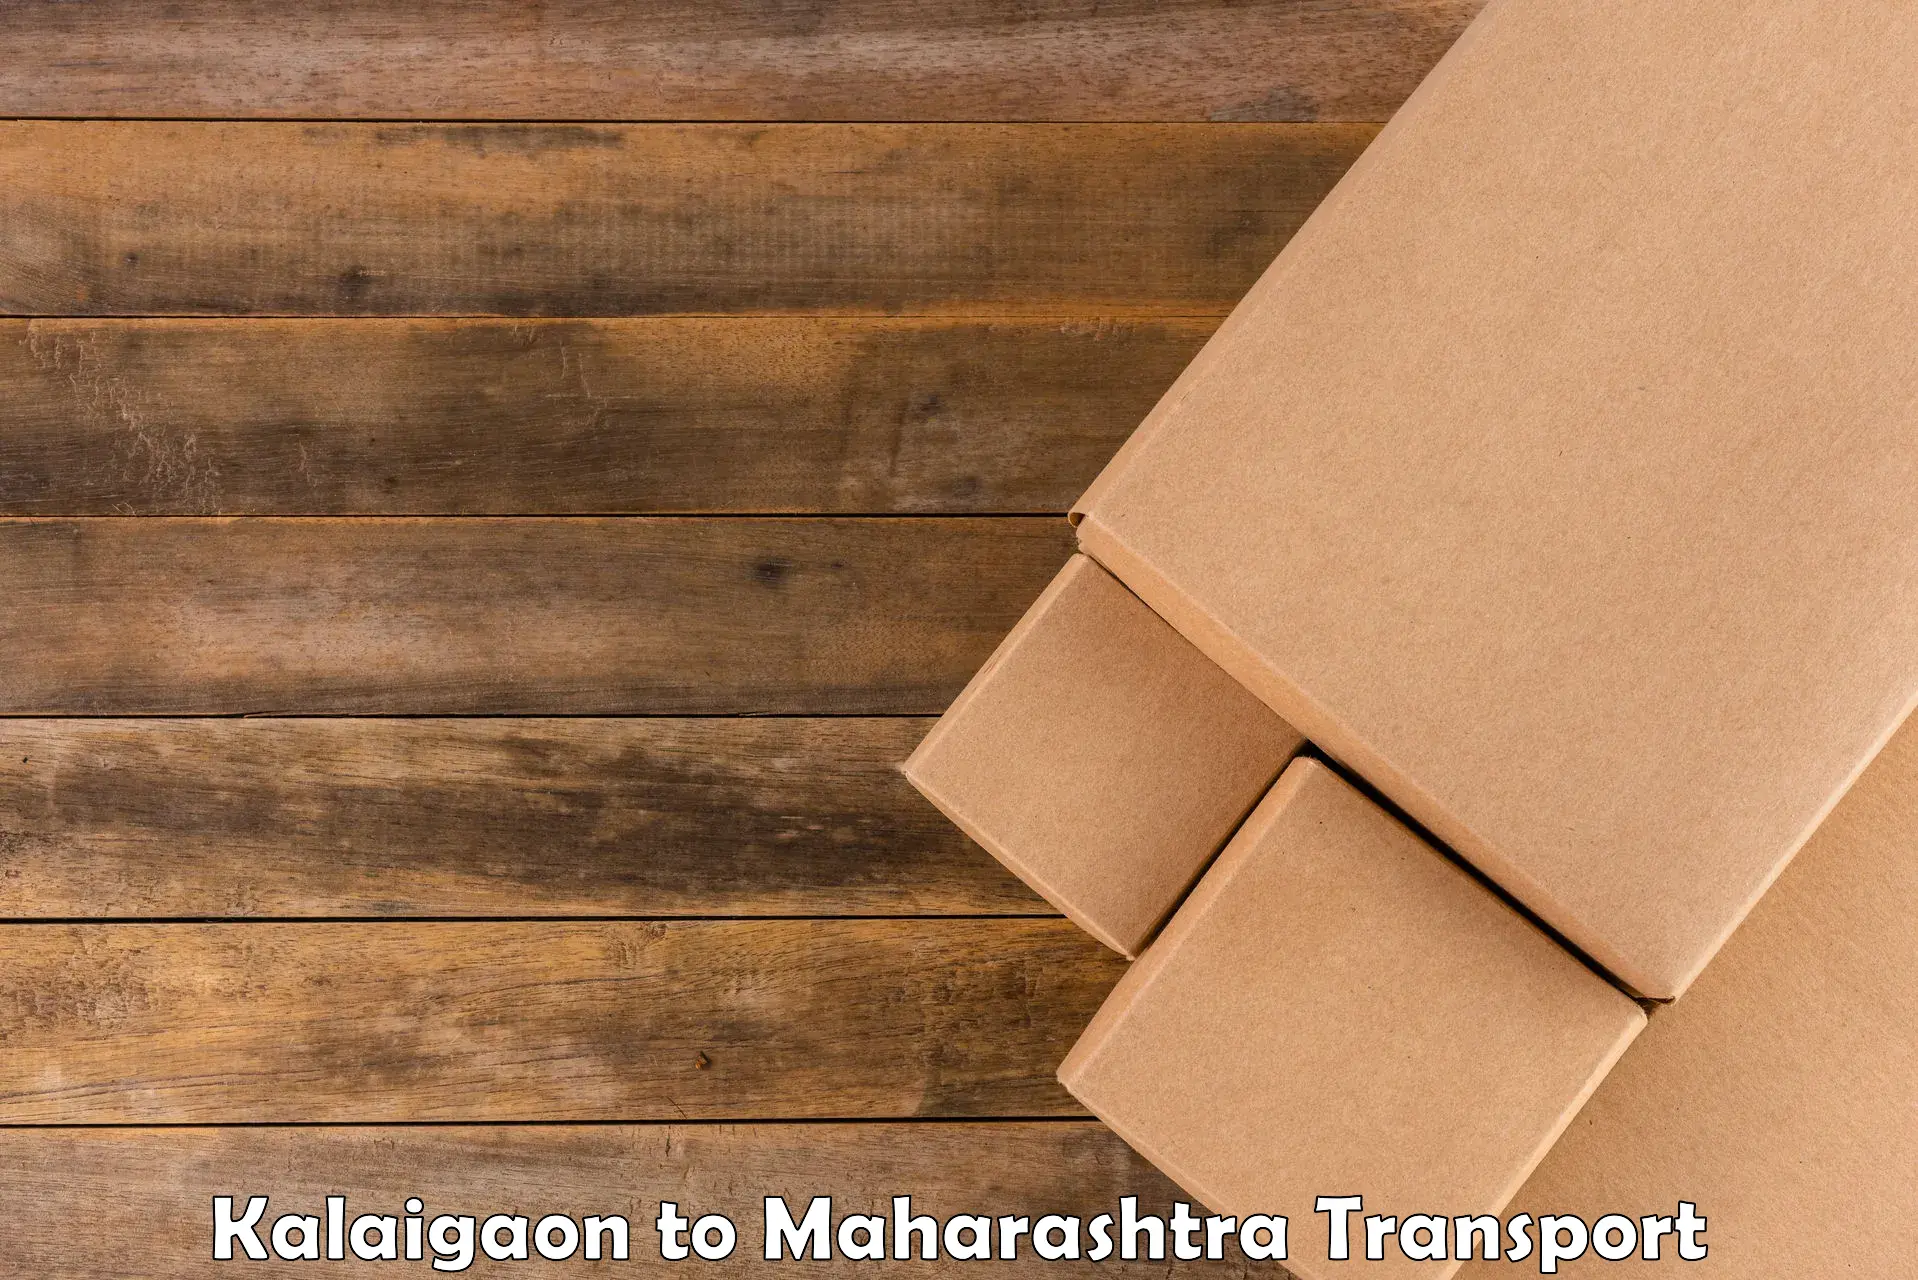 Container transport service Kalaigaon to Satara